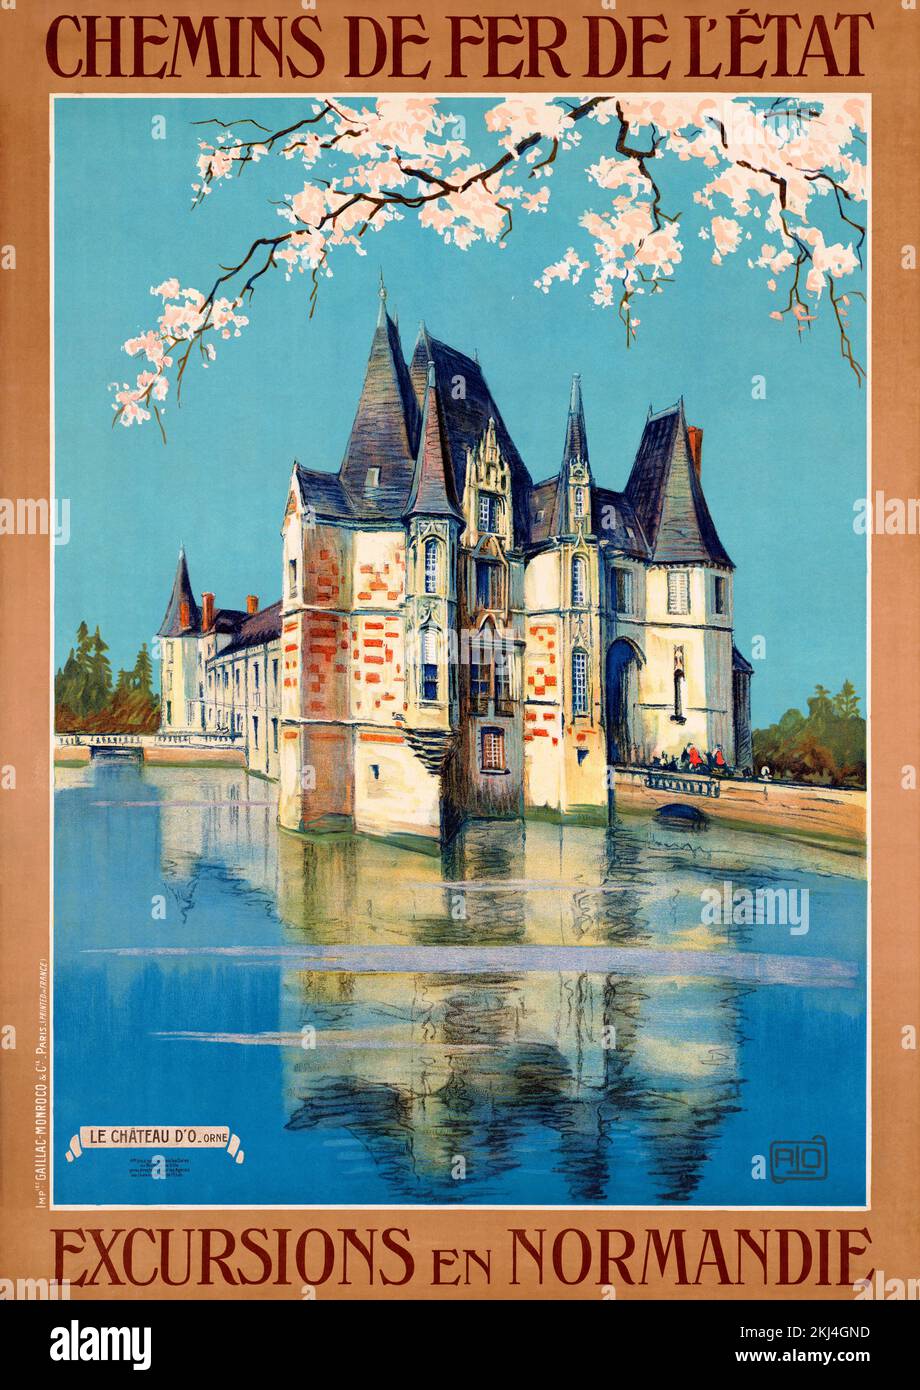 Chemins de fer de l'etat. Ausflüge in die Normandie von Charles-Jean Hallo (1882-1969). Poster wurde 1930 in Frankreich veröffentlicht. Stockfoto